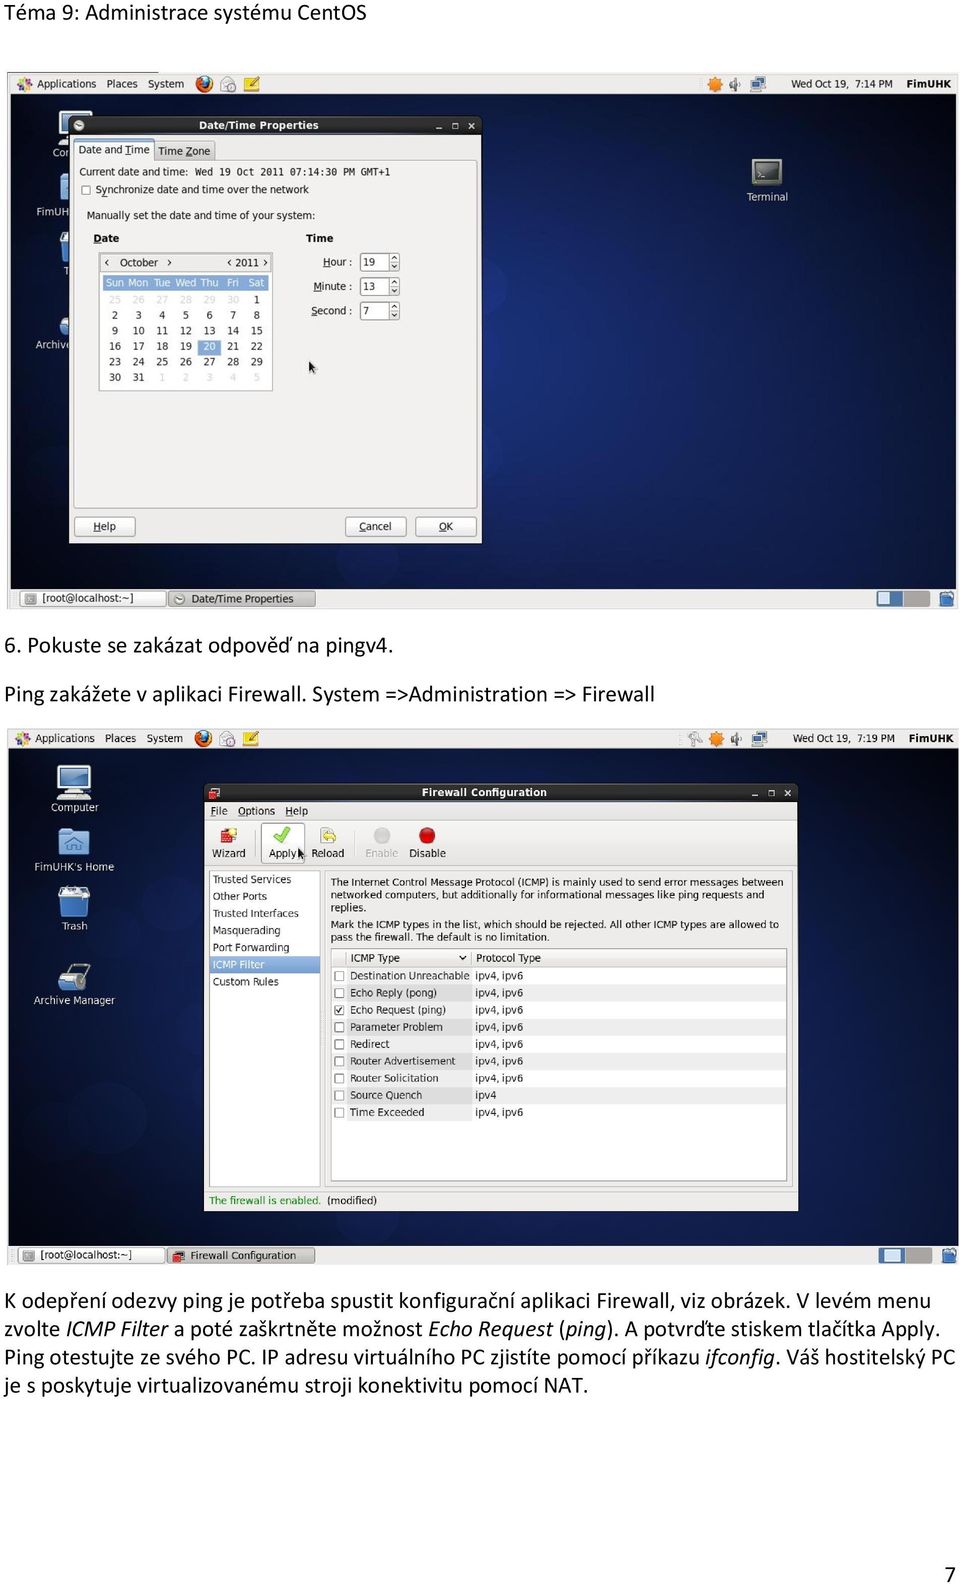 obrázek. V levém menu zvolte ICMP Filter a poté zaškrtněte možnost Echo Request (ping).